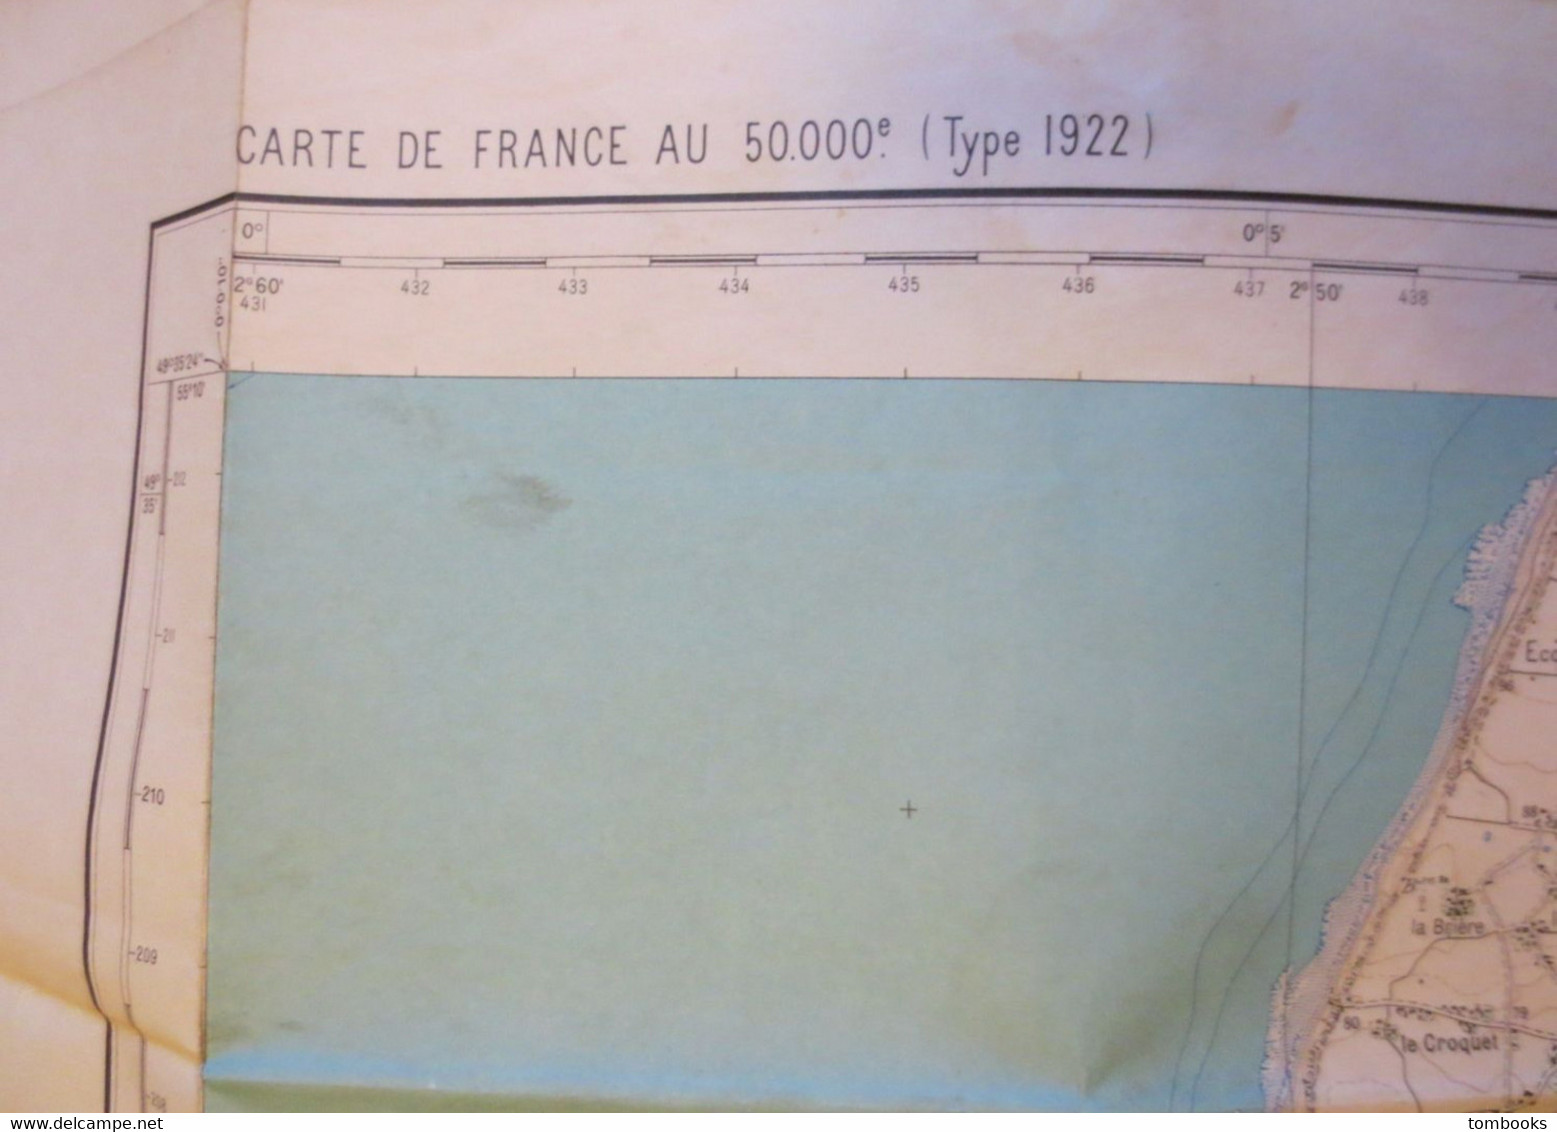 Le Havre - Plan Dépliant Et Environs Du Havre - Projection Lambert - 1957 - B.E - - Autres Plans